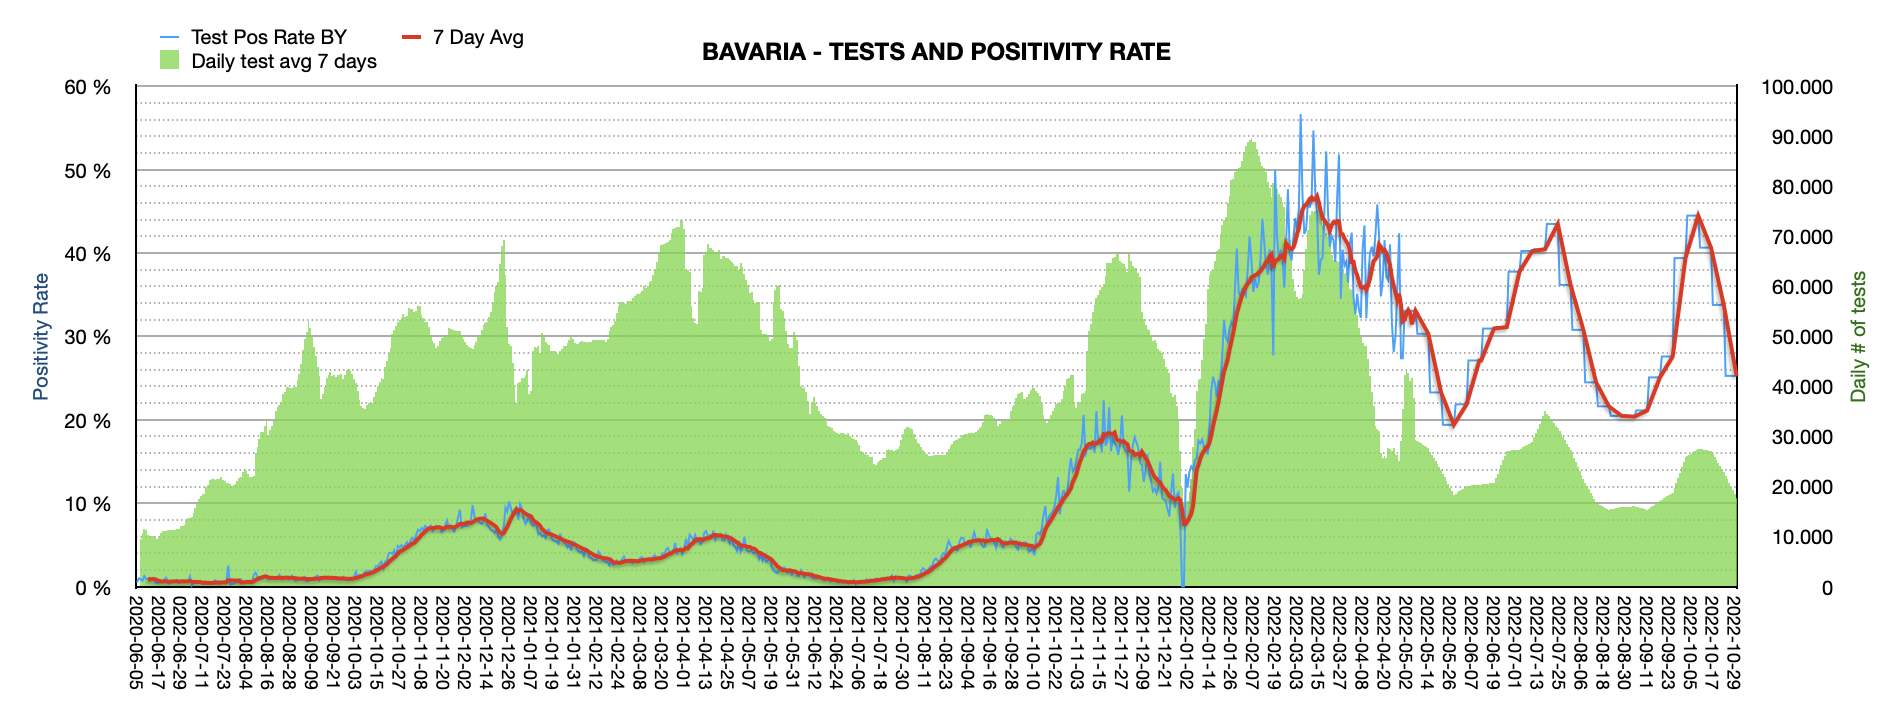 Grafik mit durchgeführten PCR Tests pro Tag in Bayern seit Juni 2020. Die Zahl der Tests pro Tag ist mit ca. 17.798 weiterhin niedrig und weit vom Maximum von ca. 100.000 Tests/Tag entfernt. Die Positivrate sinkt auf 25,27%.